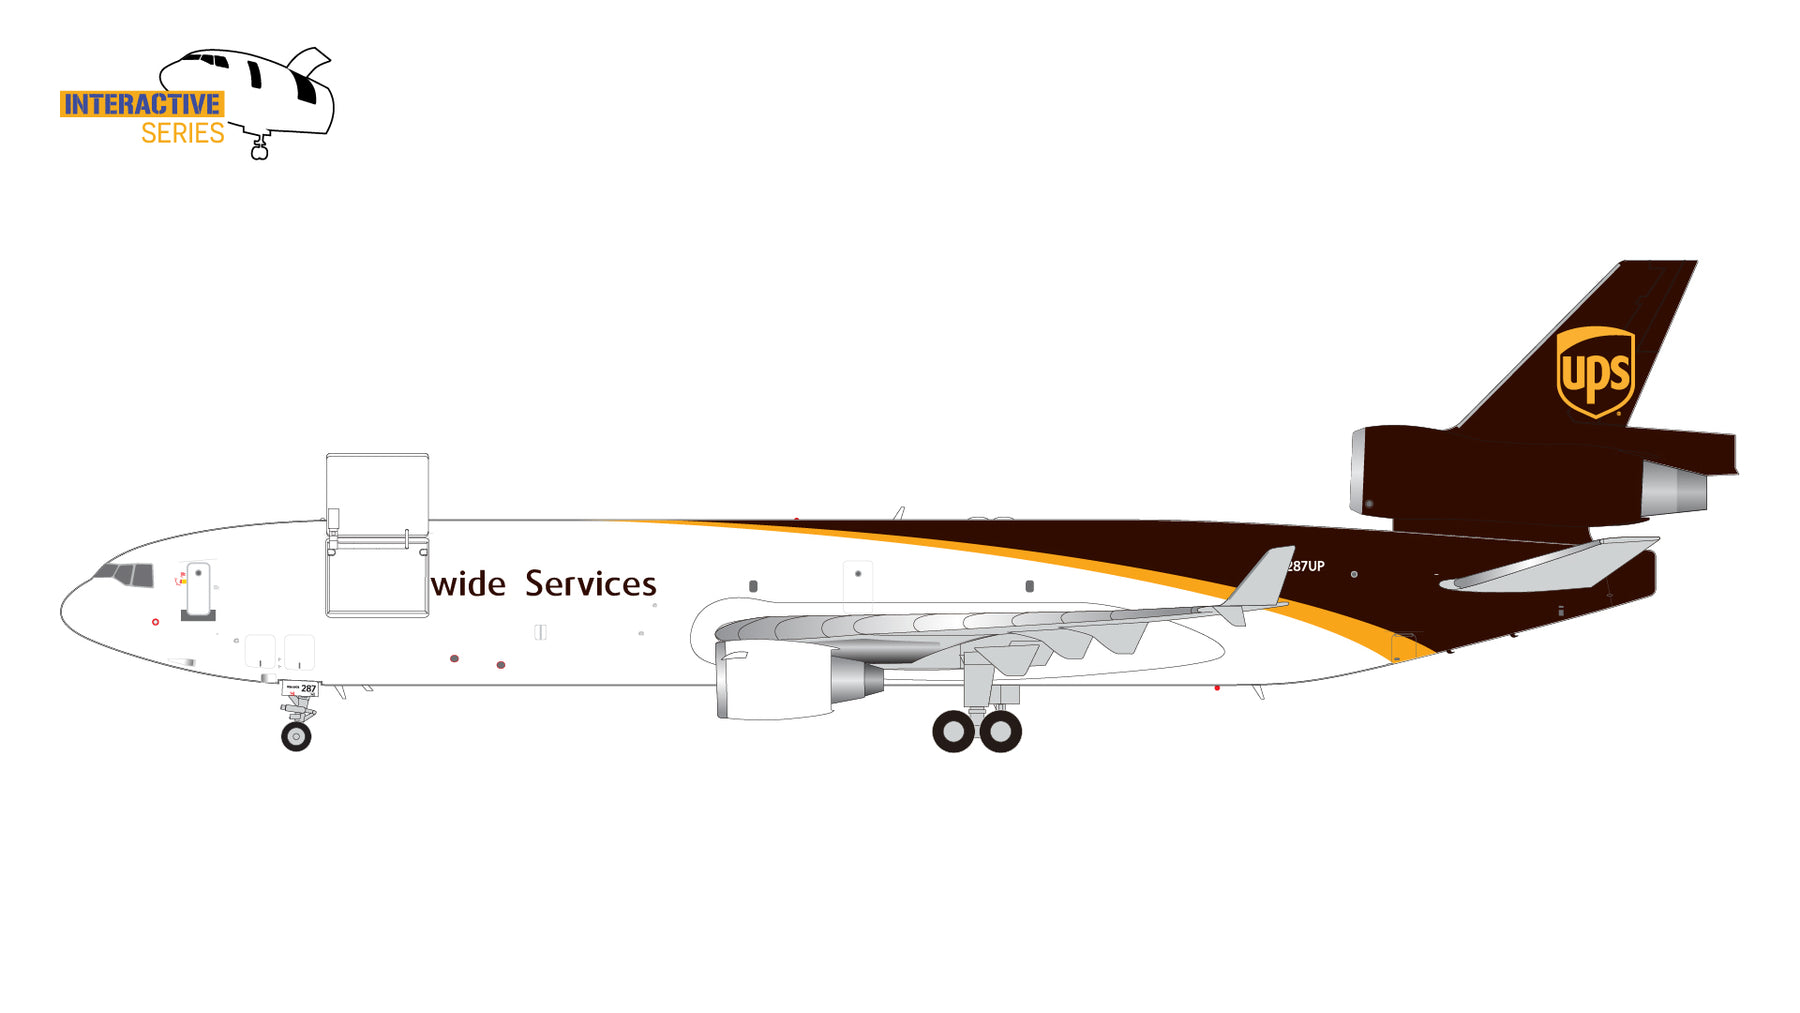 【予約商品】MD-11F UPS航空 ※開閉選択式  N287UP  1/200 (GJ20231107) [G2UPS1177]